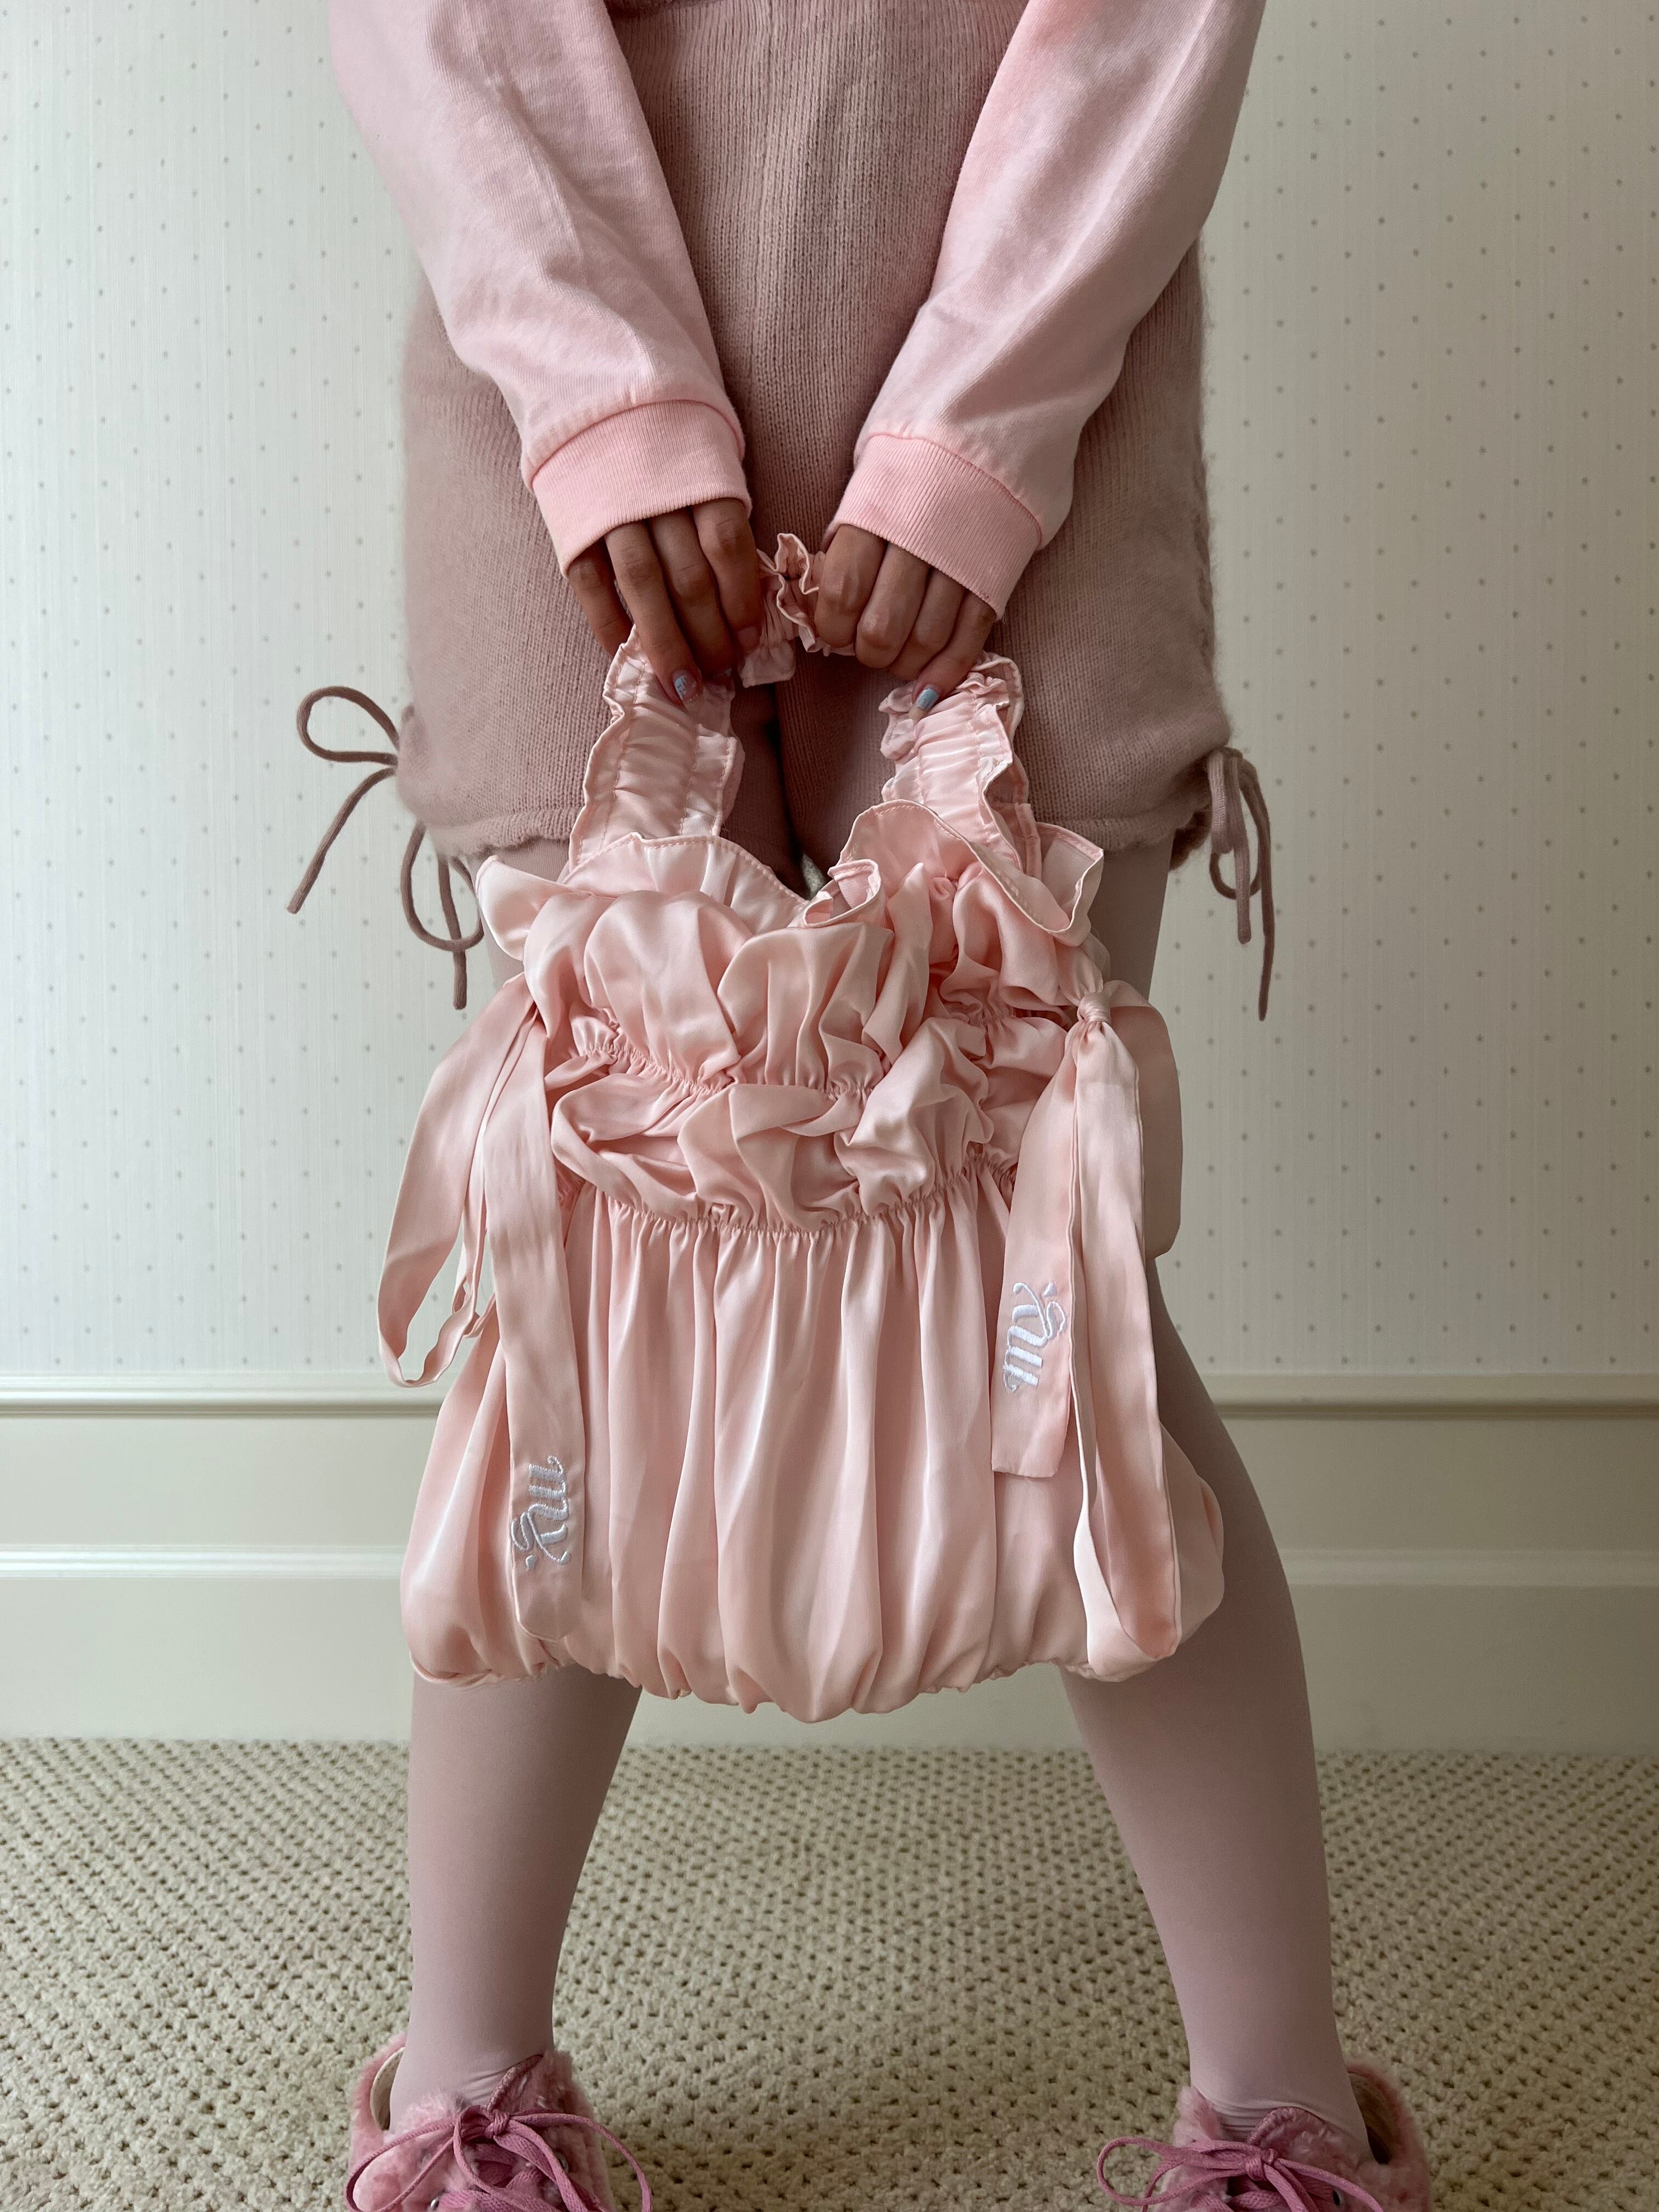 ミーヤミーヤ ''my'' whip cream bag pink